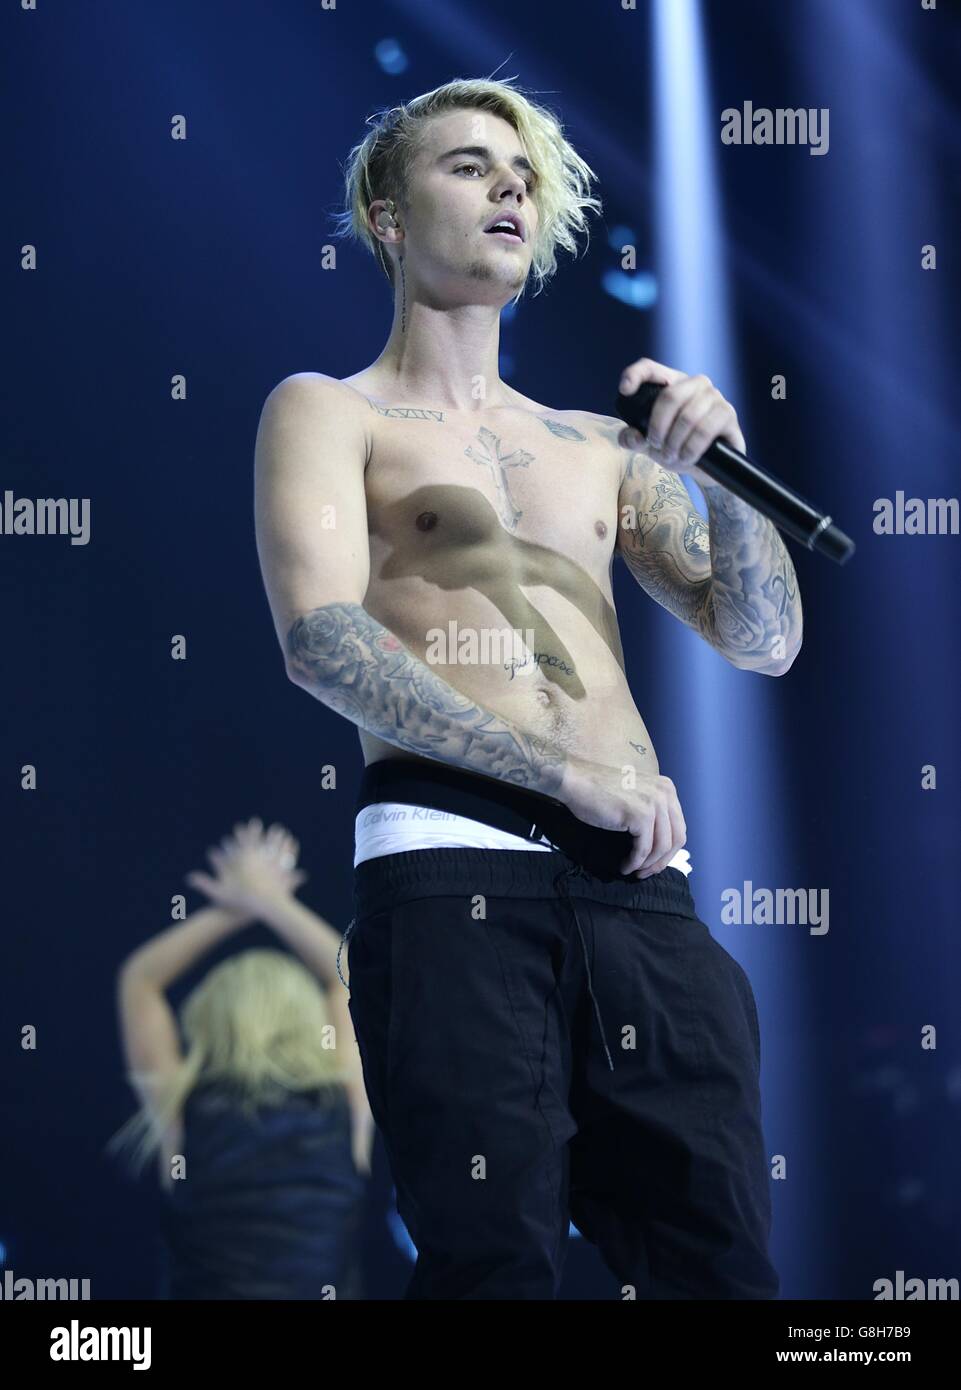 Justin Bieber actúa en el escenario durante la Capital FM Jingle Bell Ball 2015 celebrada en el O2 Arena, Londres Foto de stock